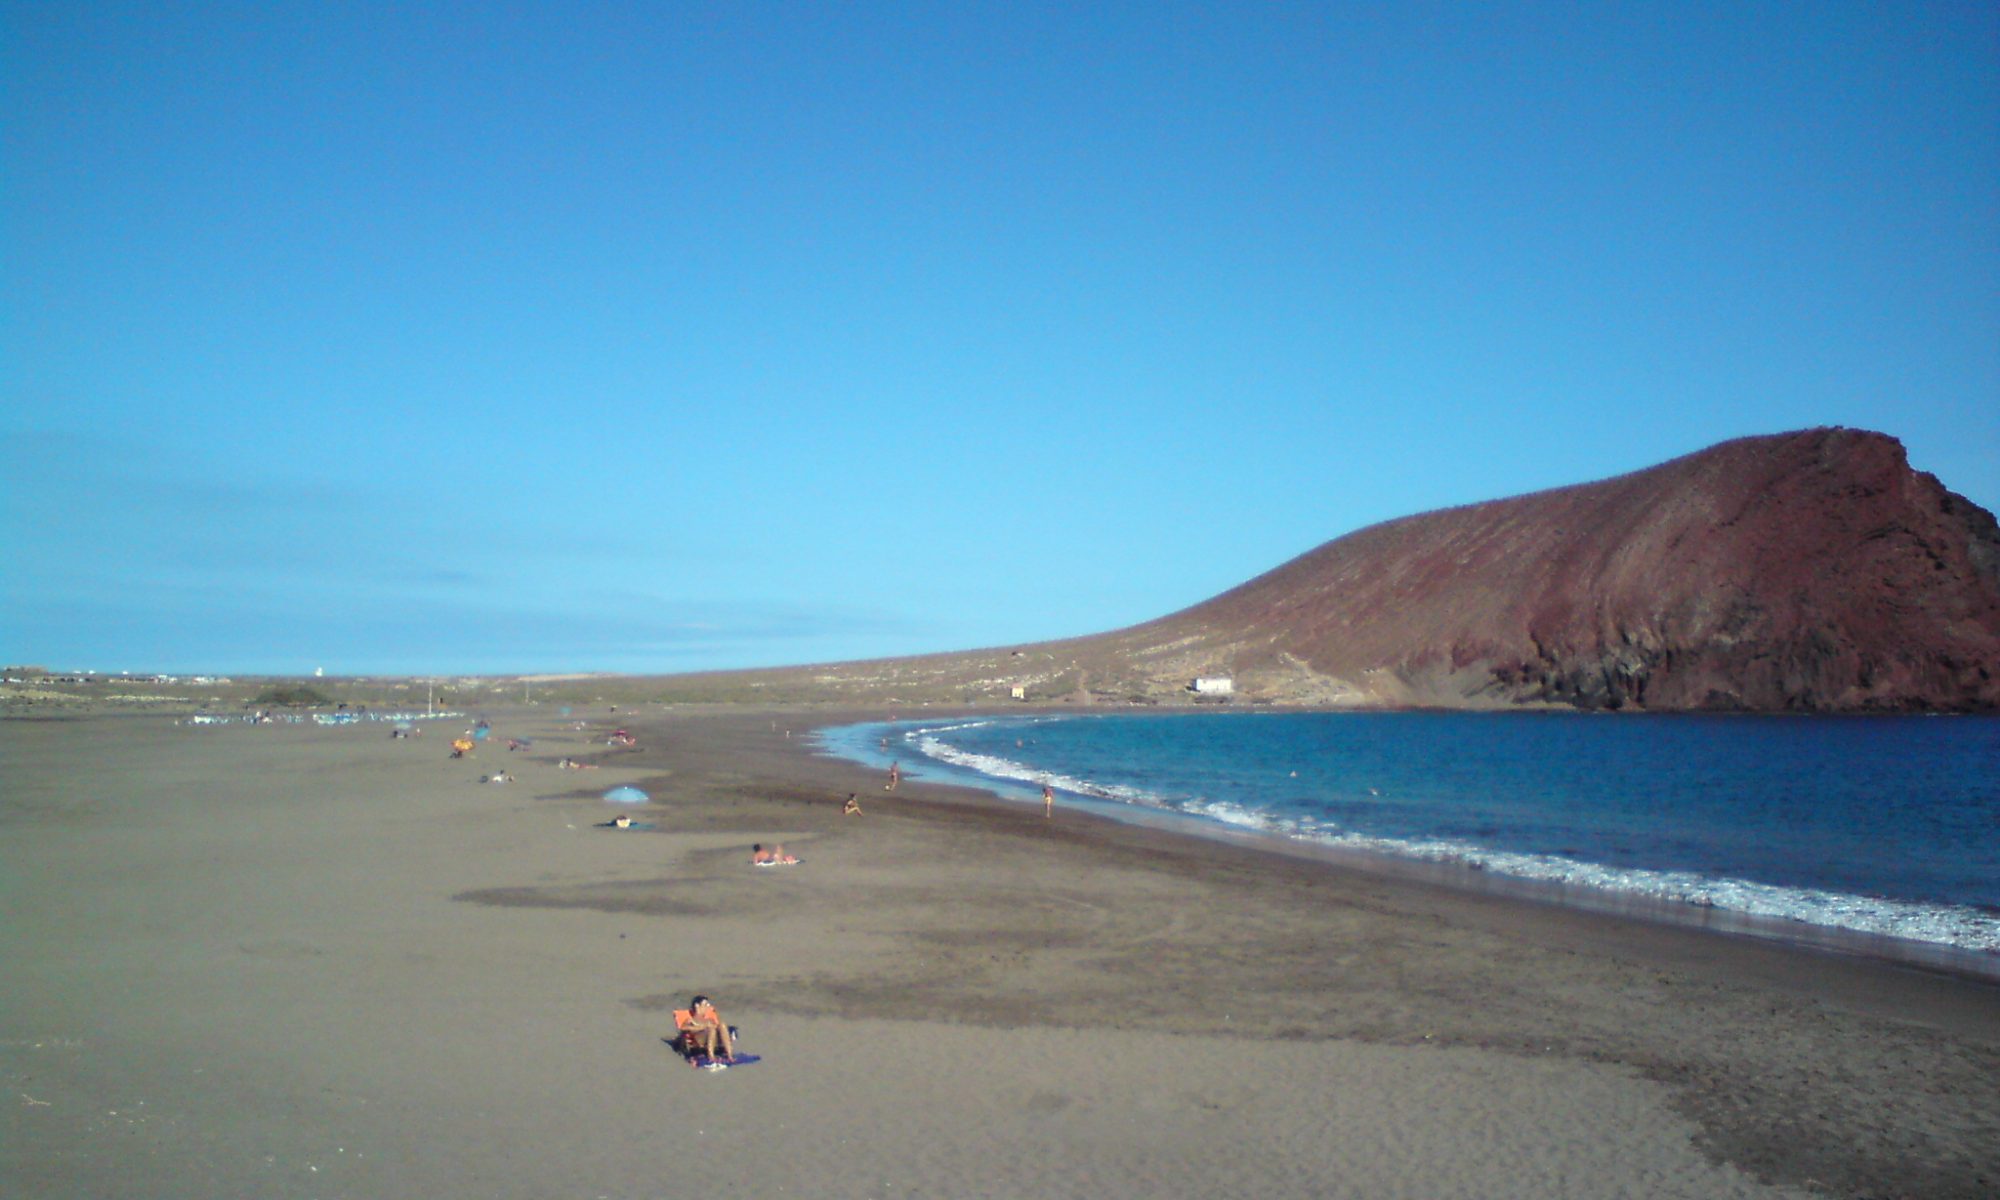 Playa de la Tejita